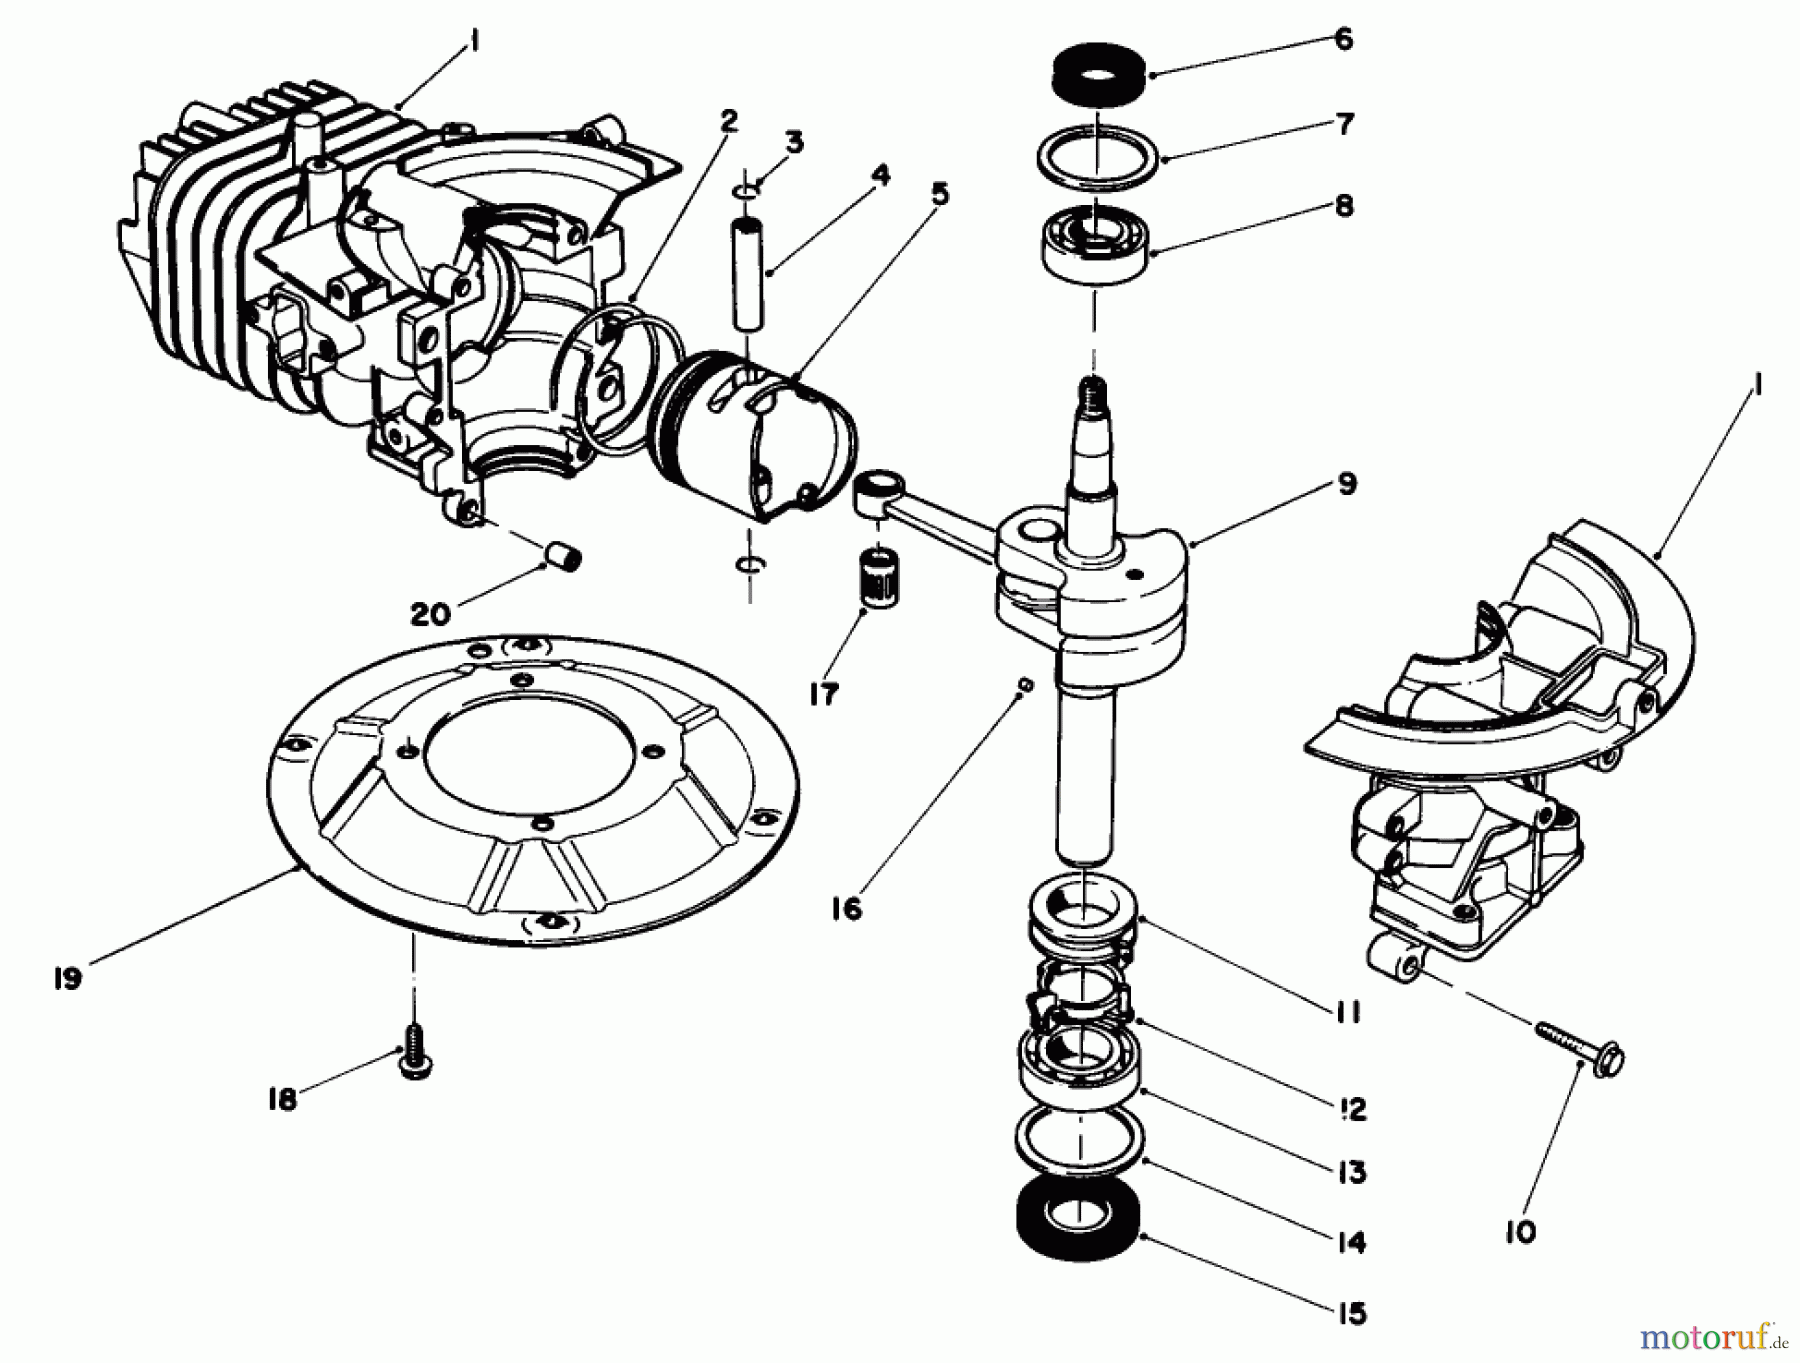  Toro Neu Mowers, Walk-Behind Seite 2 22680C - Toro Lawnmower, 1988 (8000001-8999999) ENGINE ASSEMBLY MODEL NO. 47PH7 #1